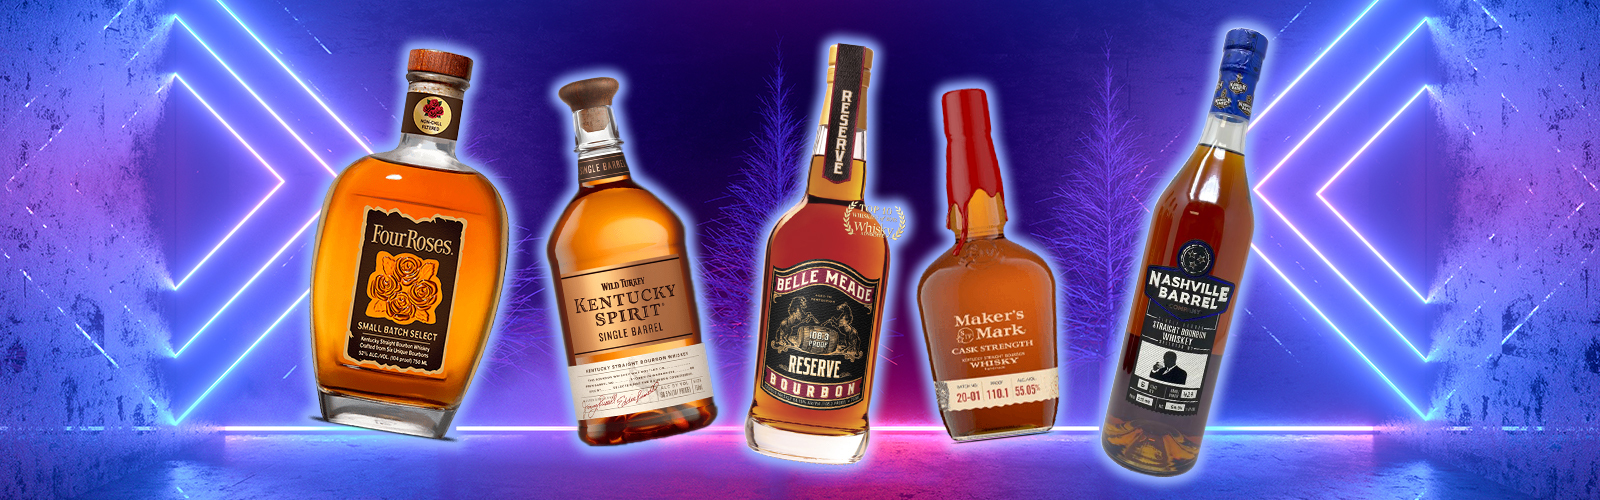 Best Bourbon Under 100 Gifts